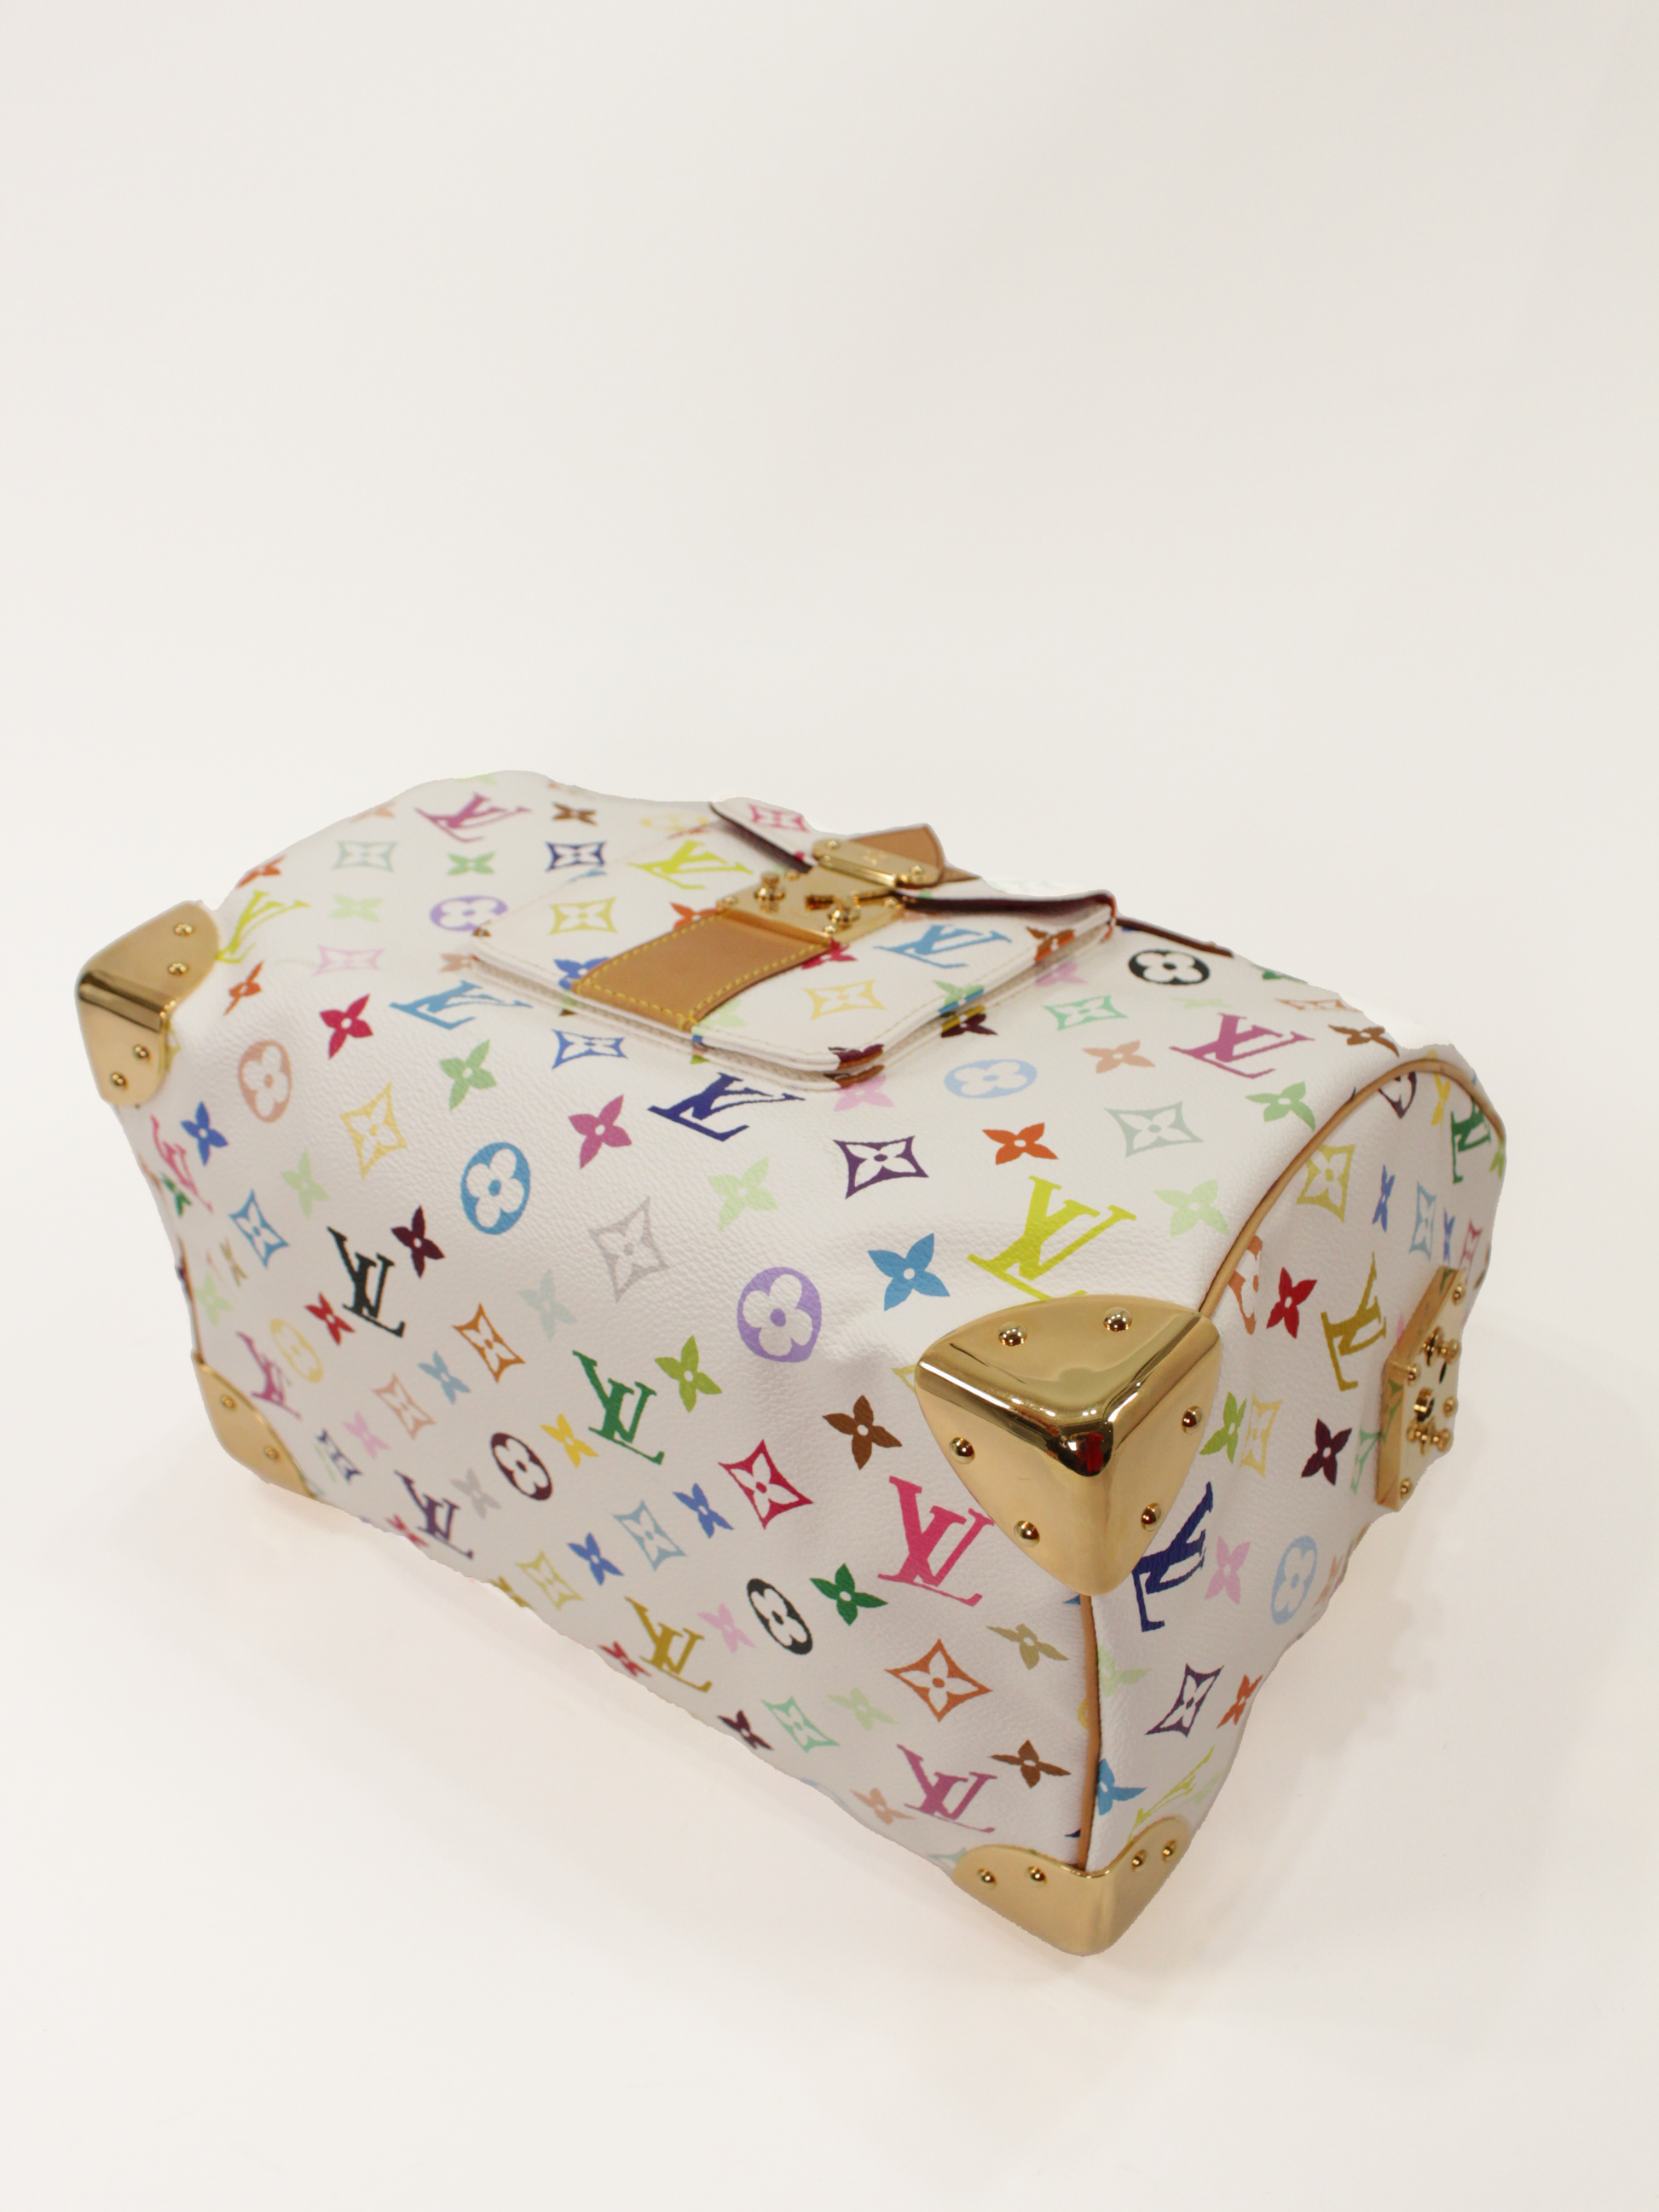 Louis Vuitton x Takashi Murakami vintage monogram bucket bag